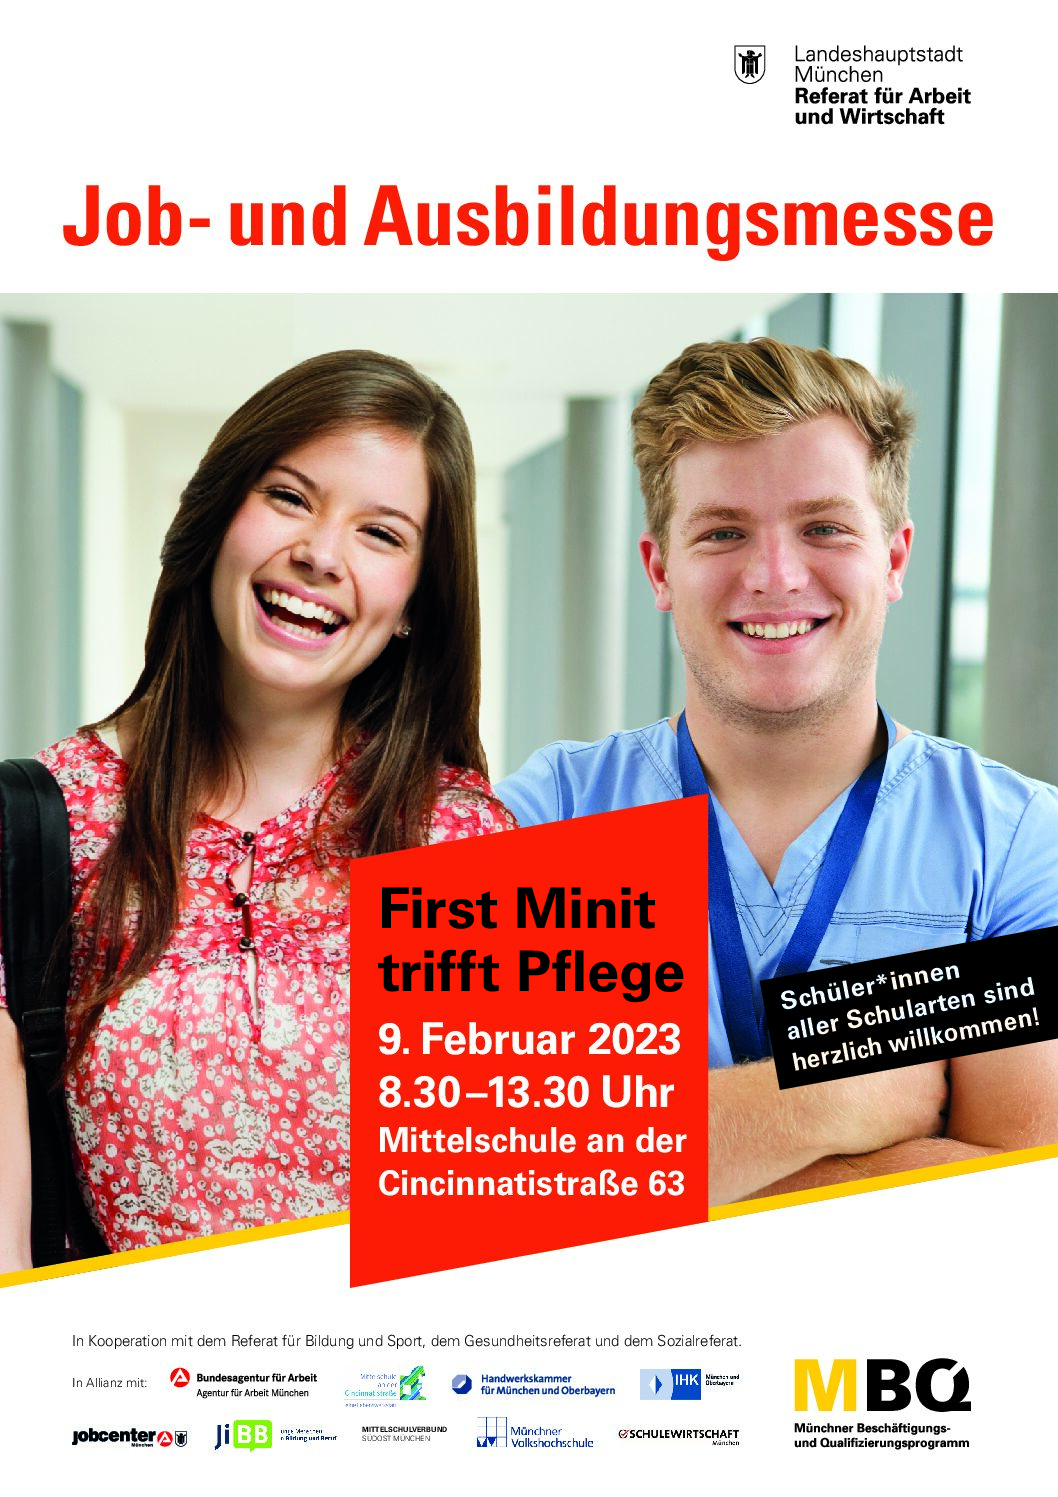 Job- und Ausbildungsmesse 2023 „First Minit trifft Pflege“